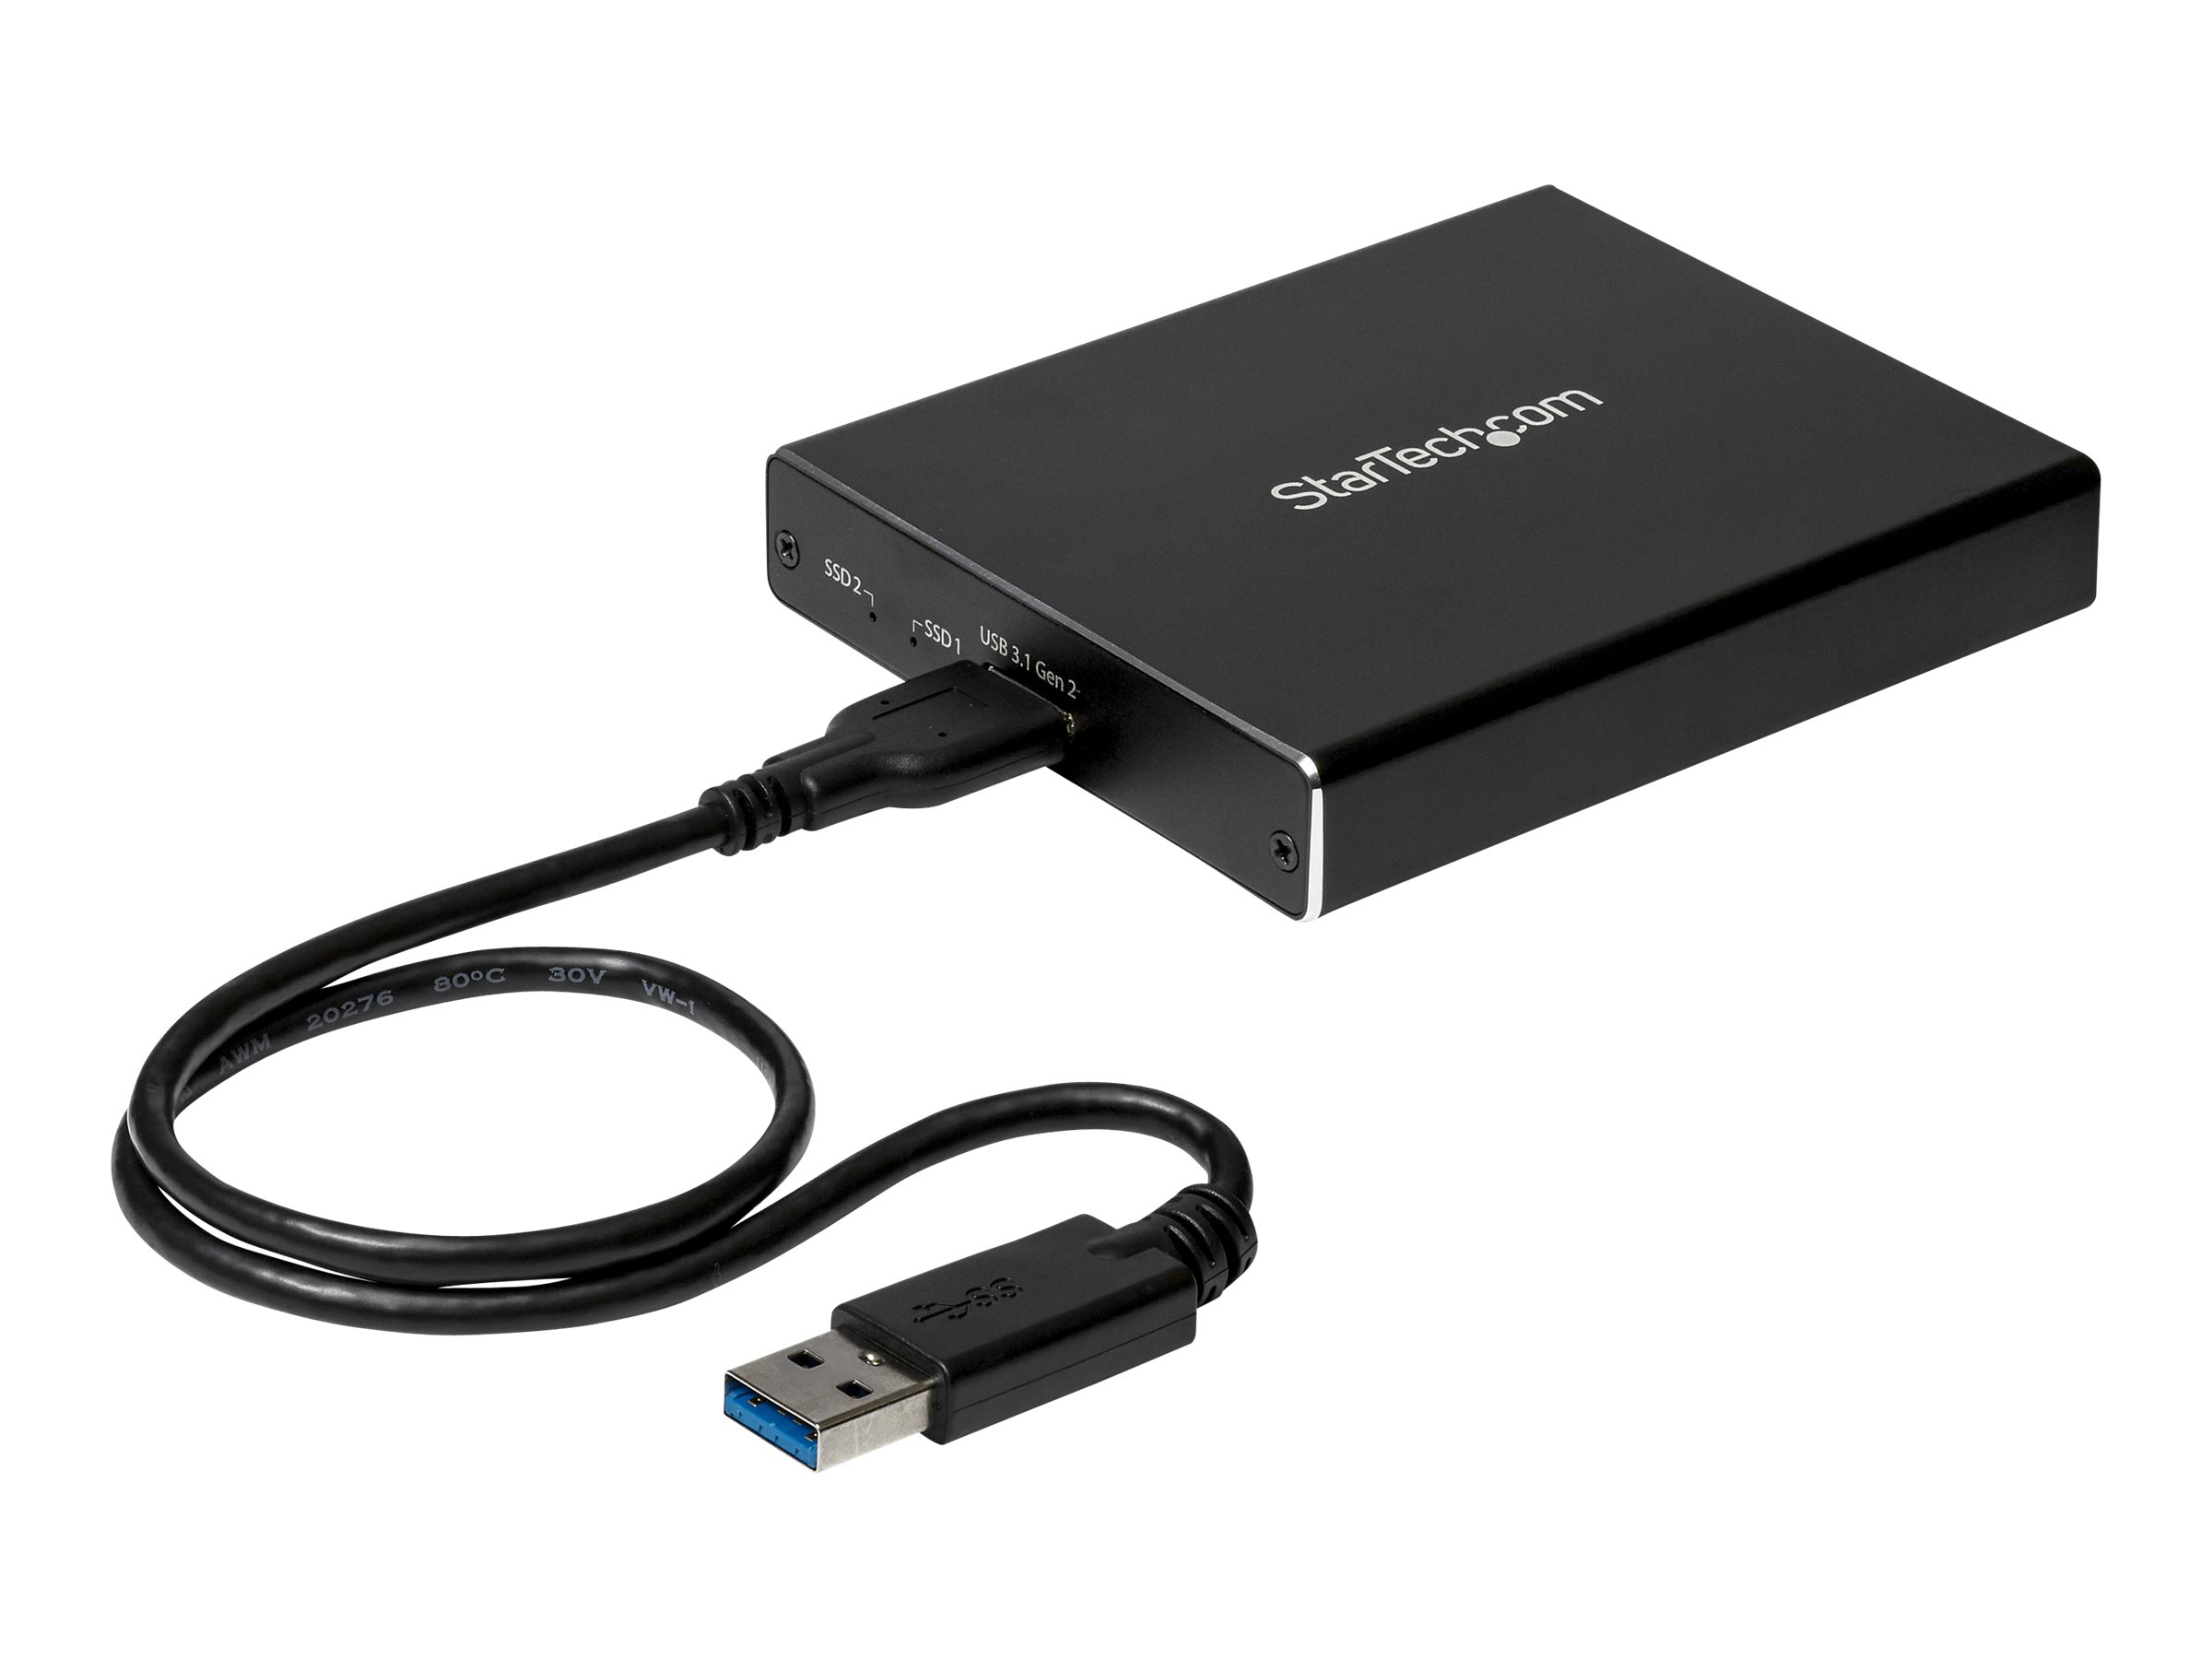 StarTech.com SSD Festplattengehäuse für zwei M.2 Festplatten - USB 3.1 Type C - USB C Kabel - USB 3.1 Case zu 2x M2 Adapter - Flash-Speicher-Array